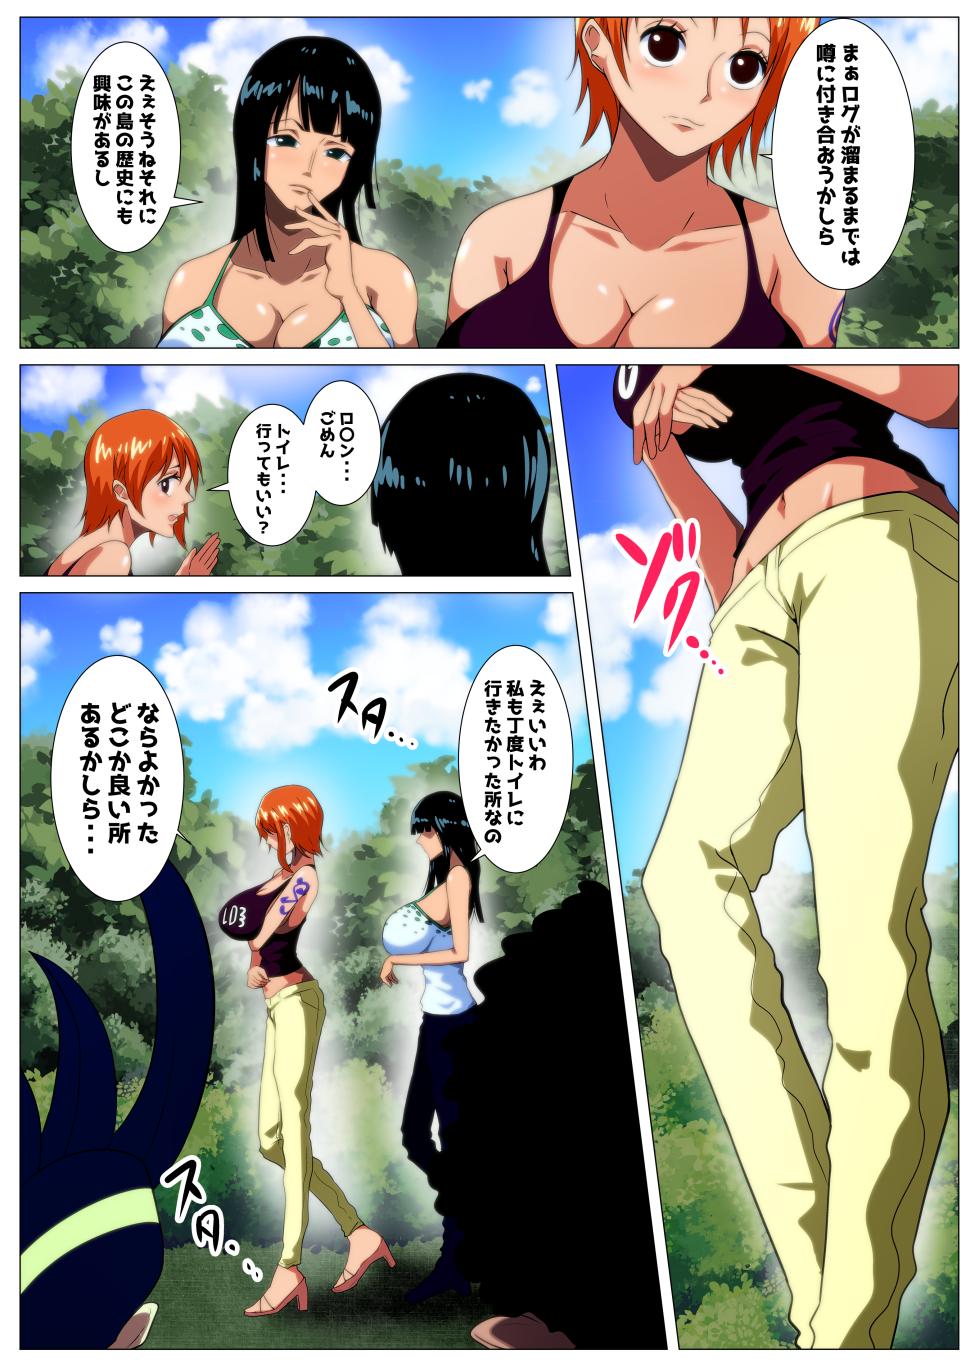 [Q Doujin] Bakunyuu me kaizoku tatsu no otakara iori shi (One Piece) - Page 3